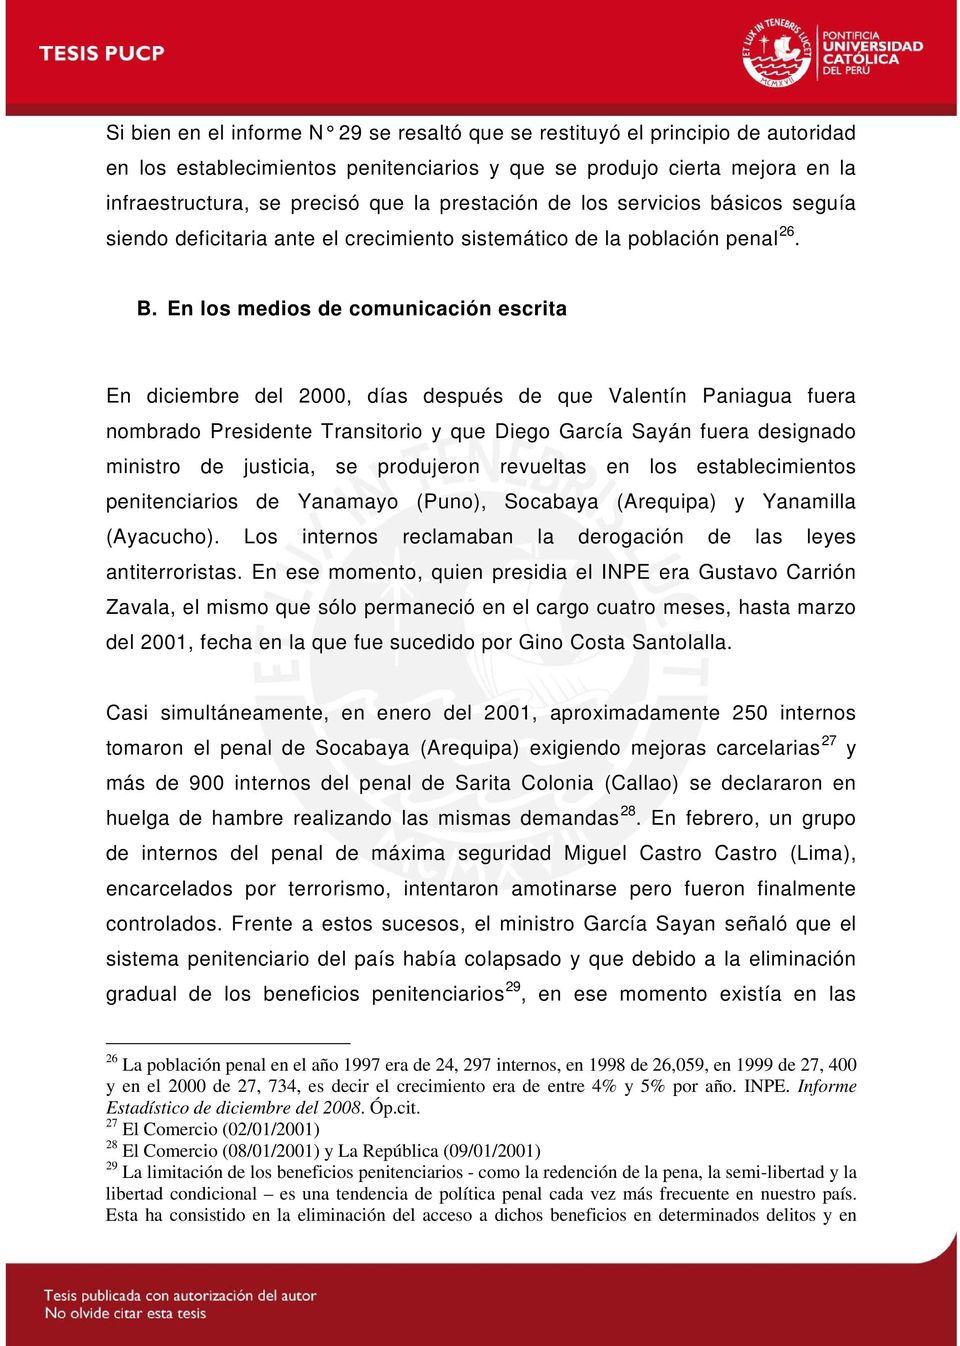 En los medios de comunicación escrita En diciembre del 2000, días después de que Valentín Paniagua fuera nombrado Presidente Transitorio y que Diego García Sayán fuera designado ministro de justicia,